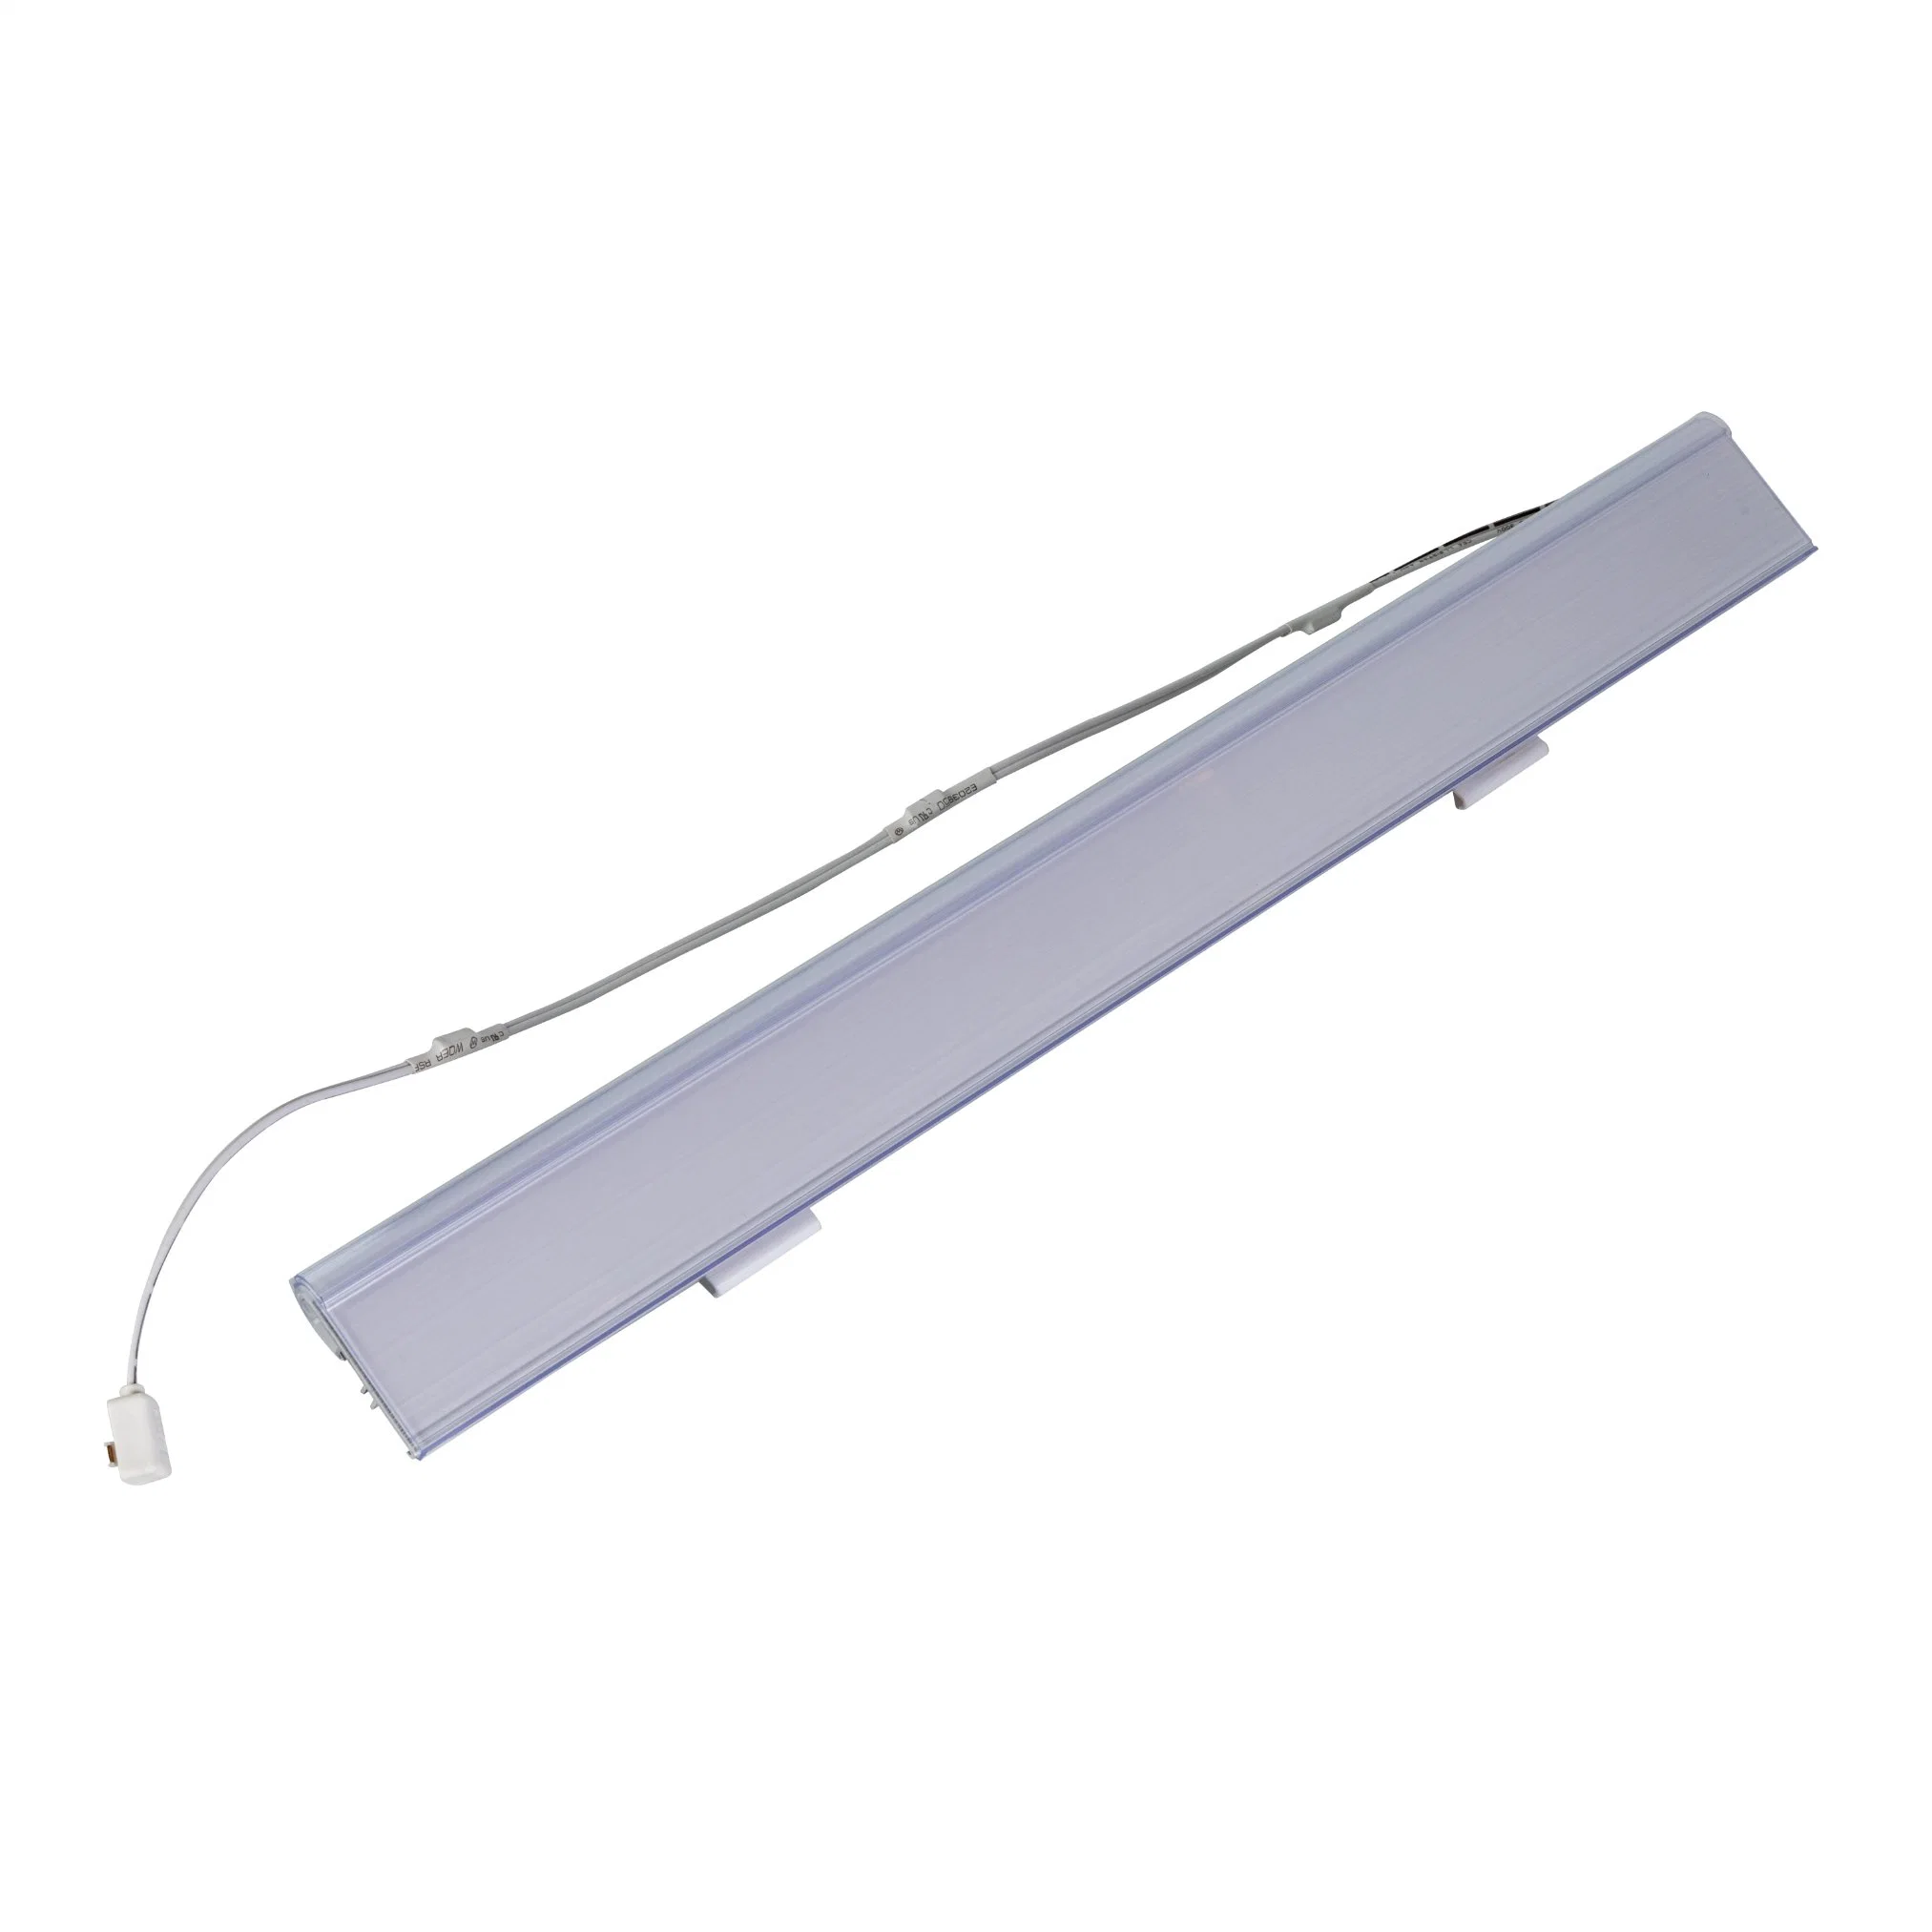 LED-Tag-Leuchte mit Aluminiumprofil für Regalbeleuchtung